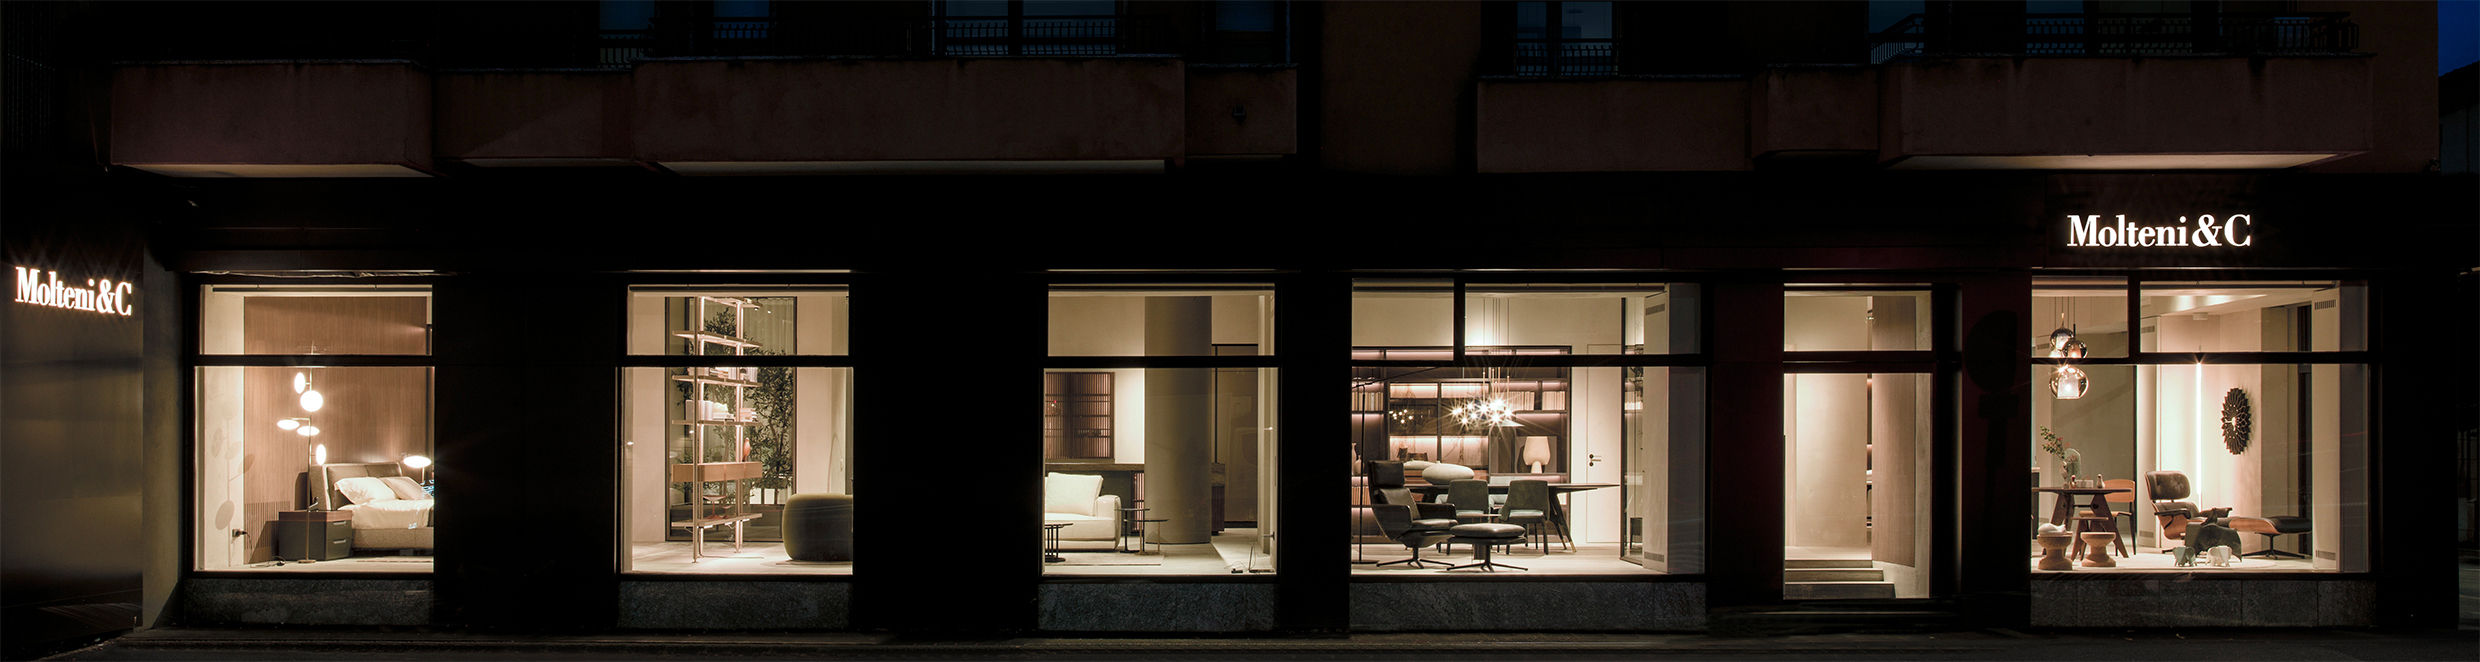 Dieses Foto zeigt den Molteni&C Flagship Store mit Peverelli Design